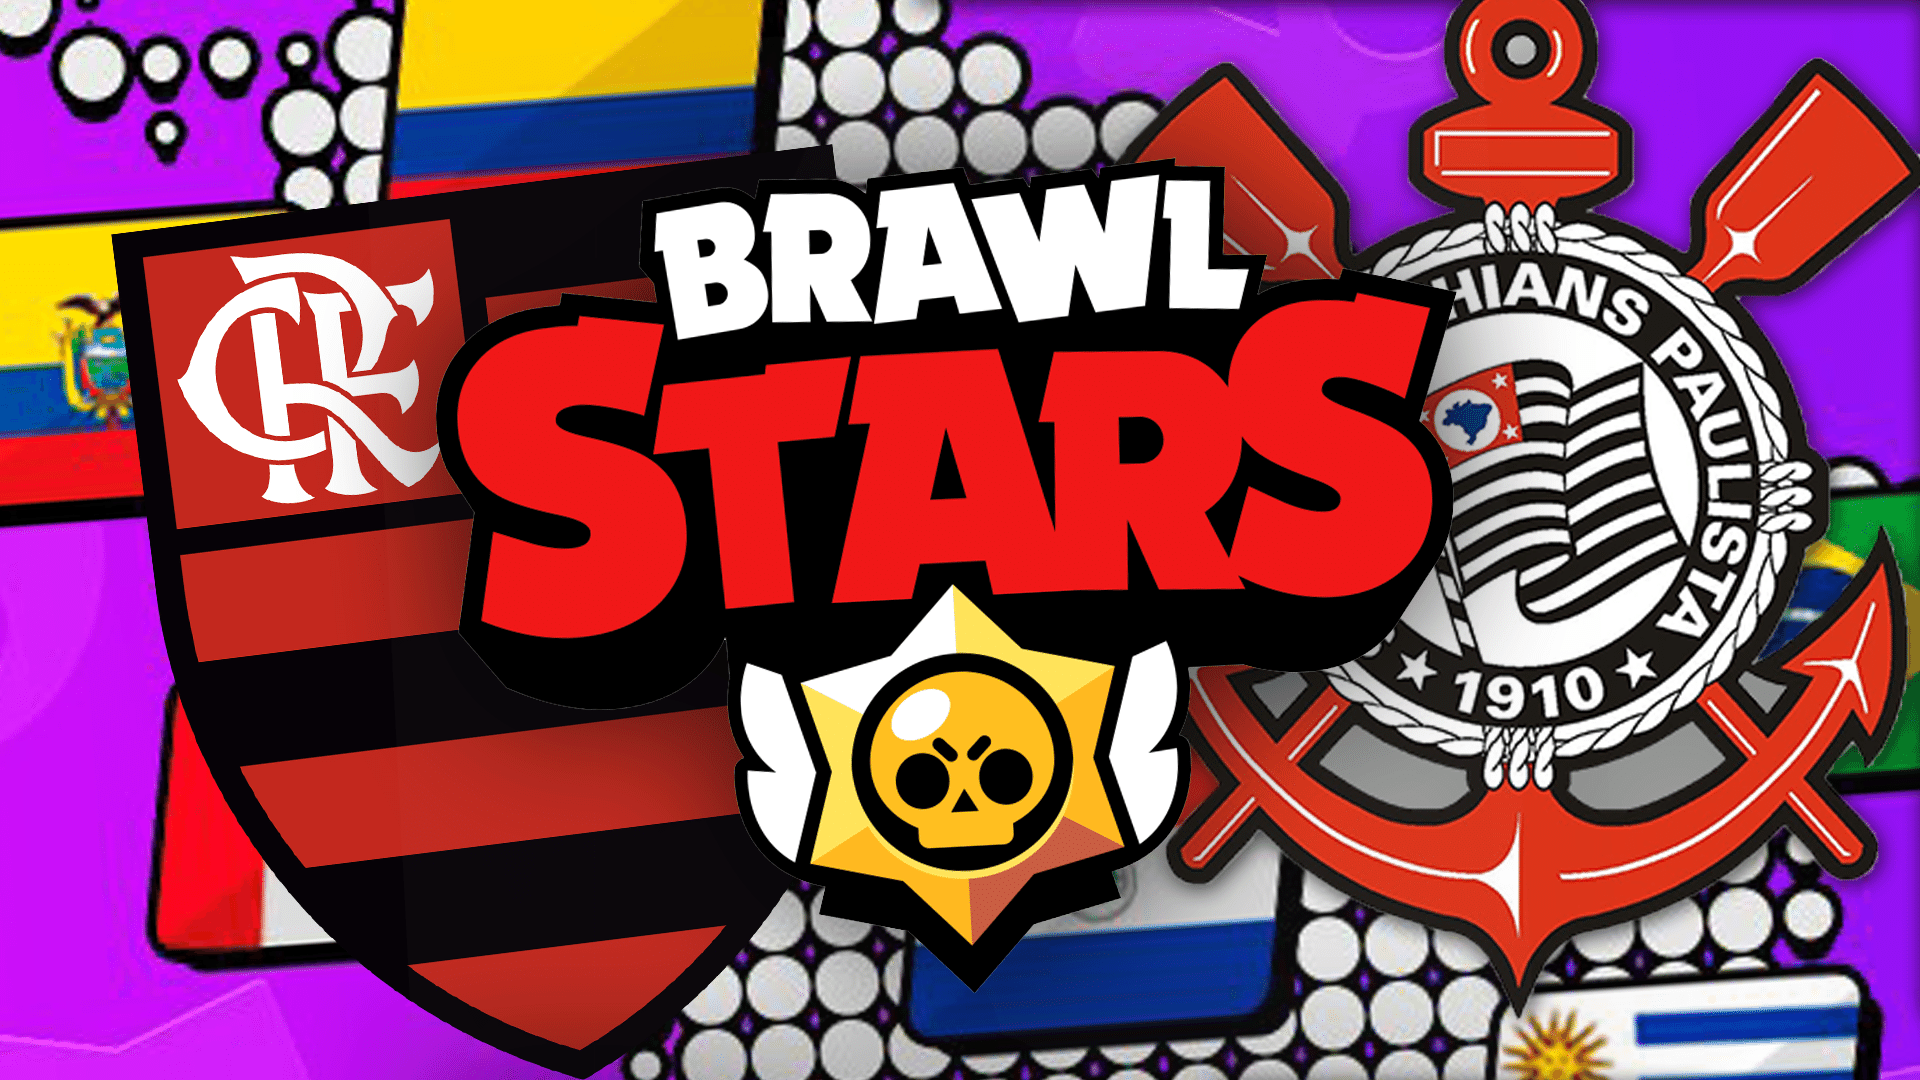 Corinthians E Flamengo Disputam Brawl Stars Master League Veja Times - brawl stars movinentos